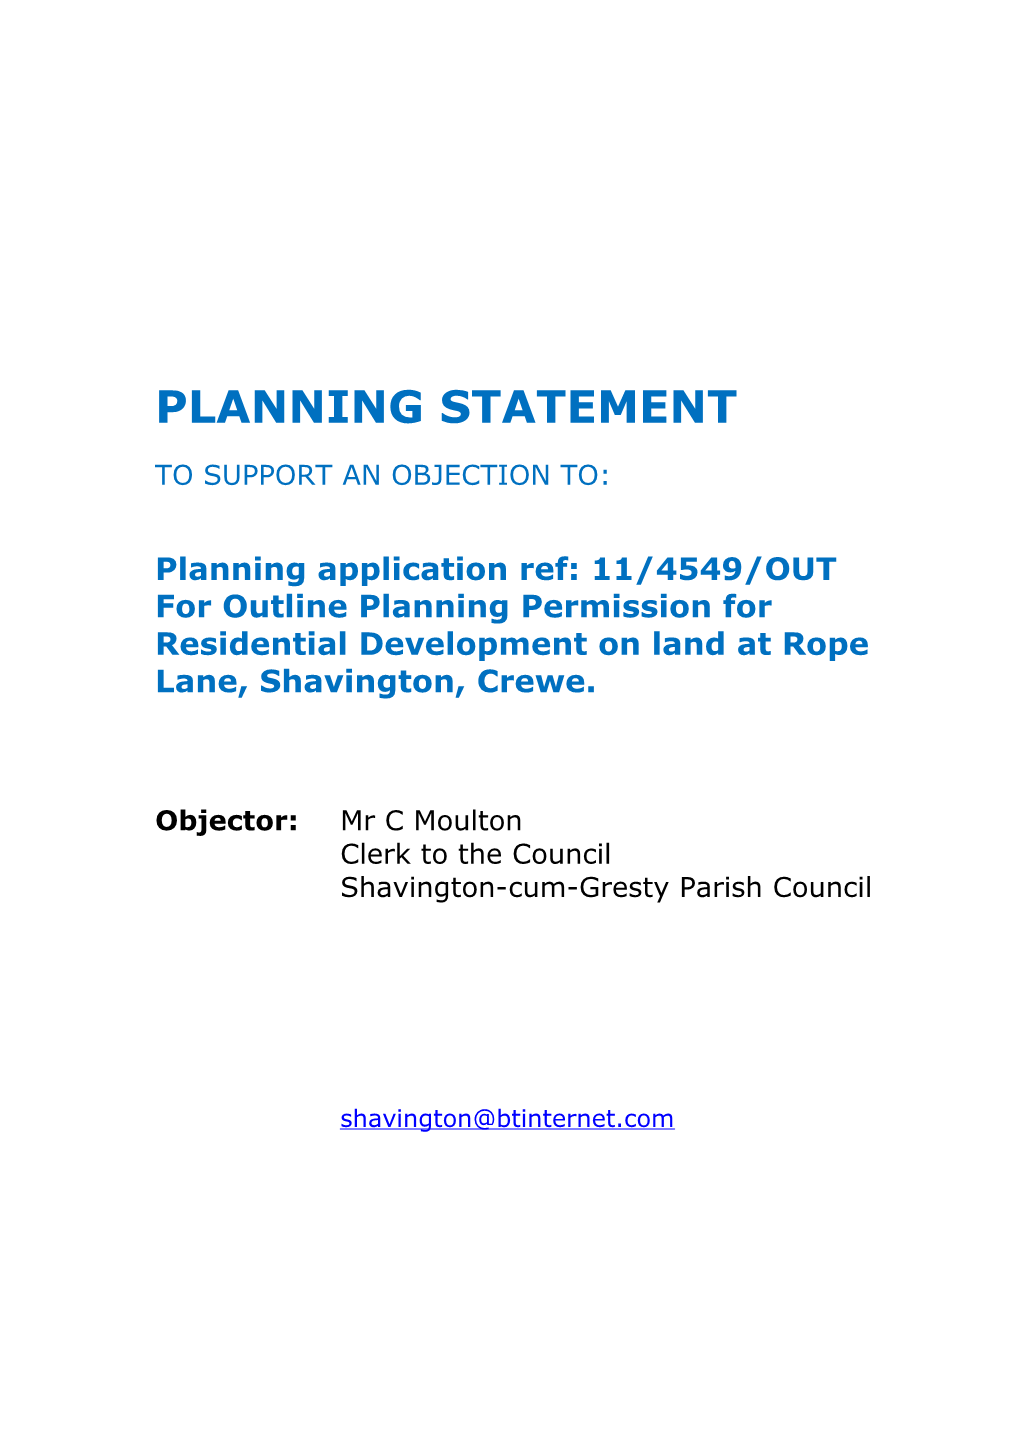 Planning Statement